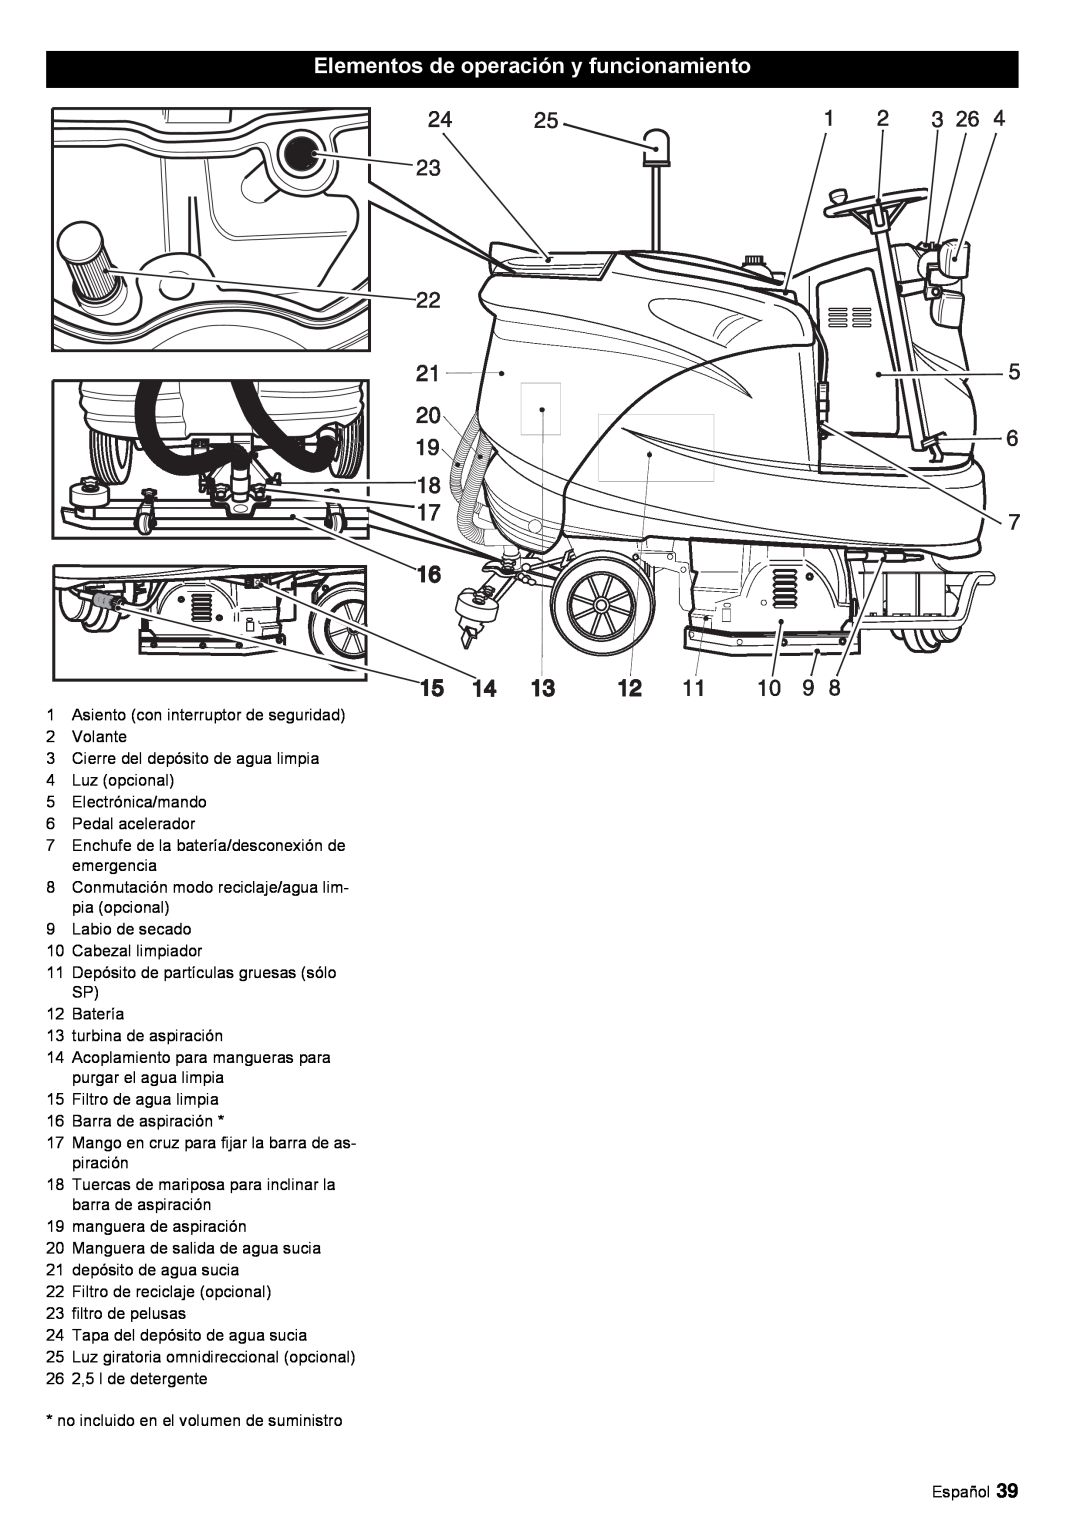 Windsor 30 SP manual Elementos de operación y funcionamiento 